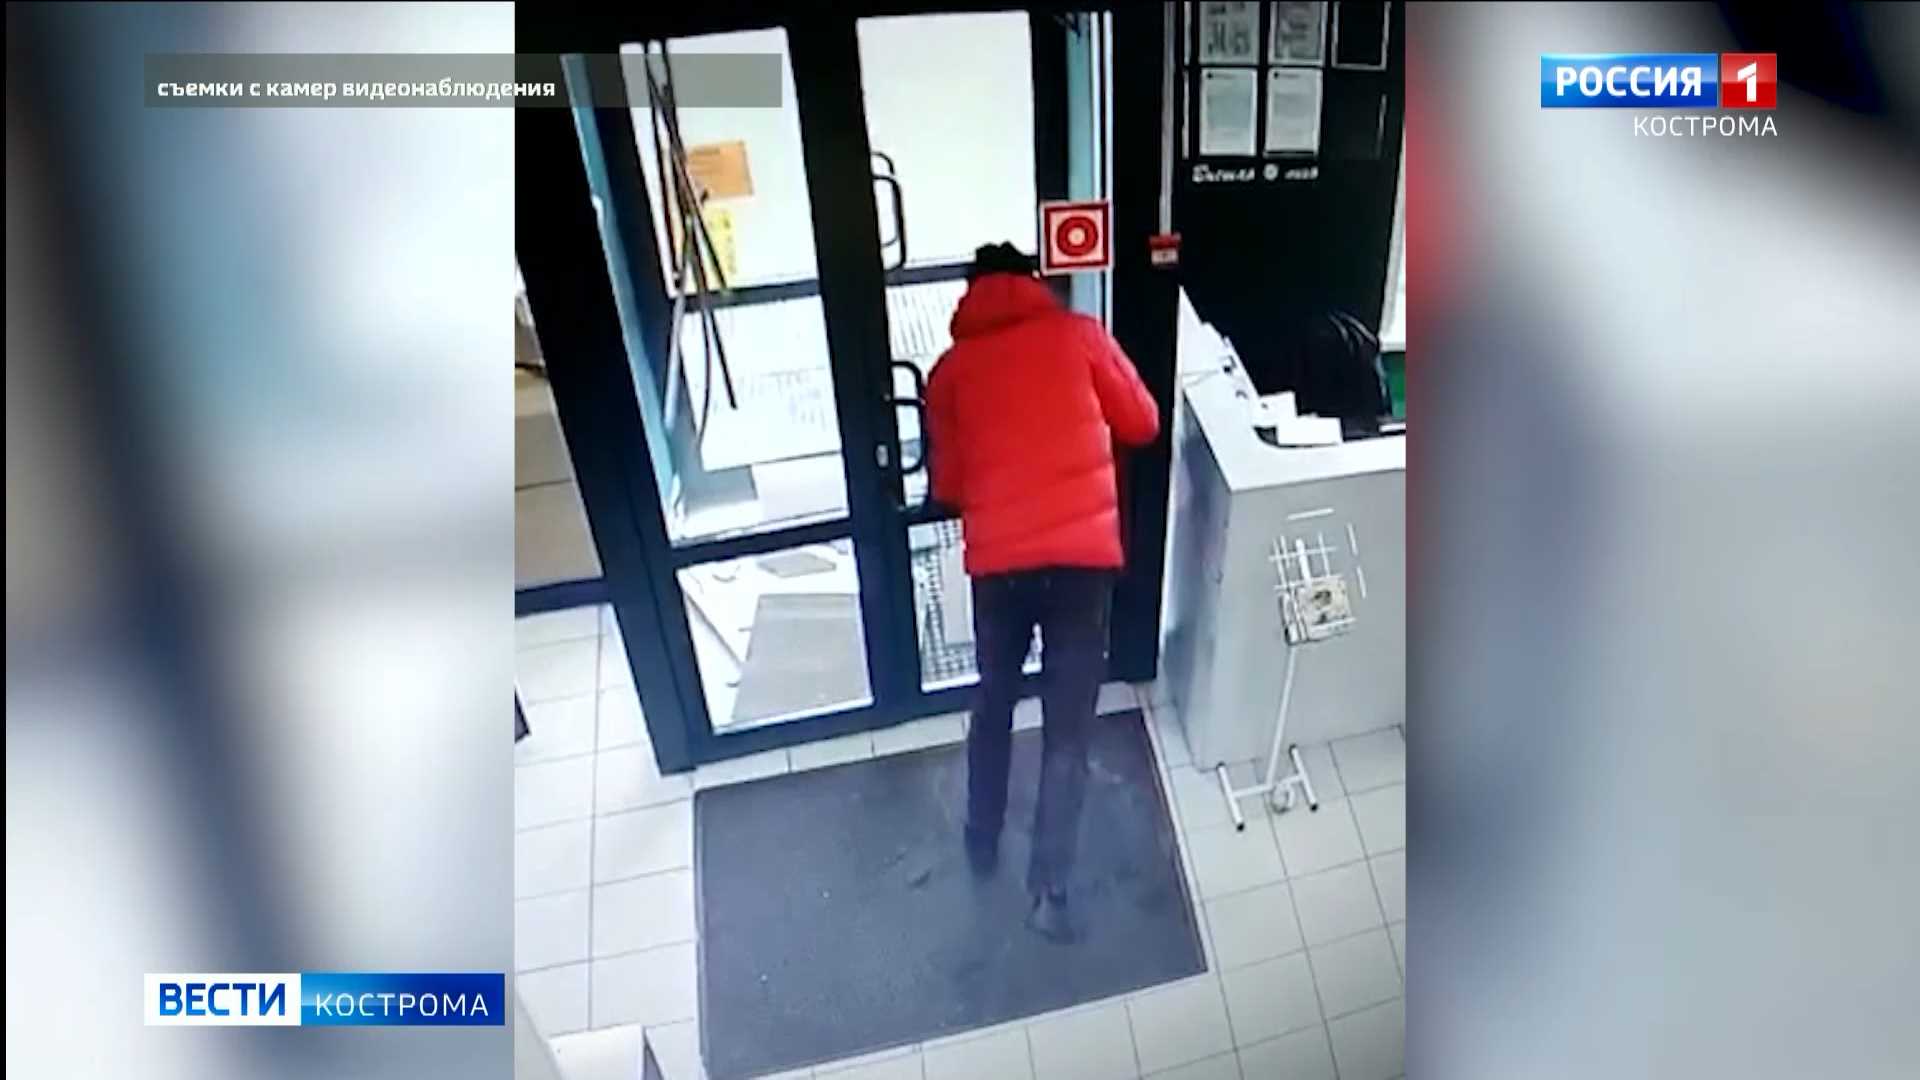 менее часа назад
                                                        
                                                                    
                                  
                              
              
                
                
                
                  
                    
                      Костромич попытался открыть двери магазина своей головой                    
                    
                      Происшествие случилось в одной из торговых точек Давыдовских микрорайонов.